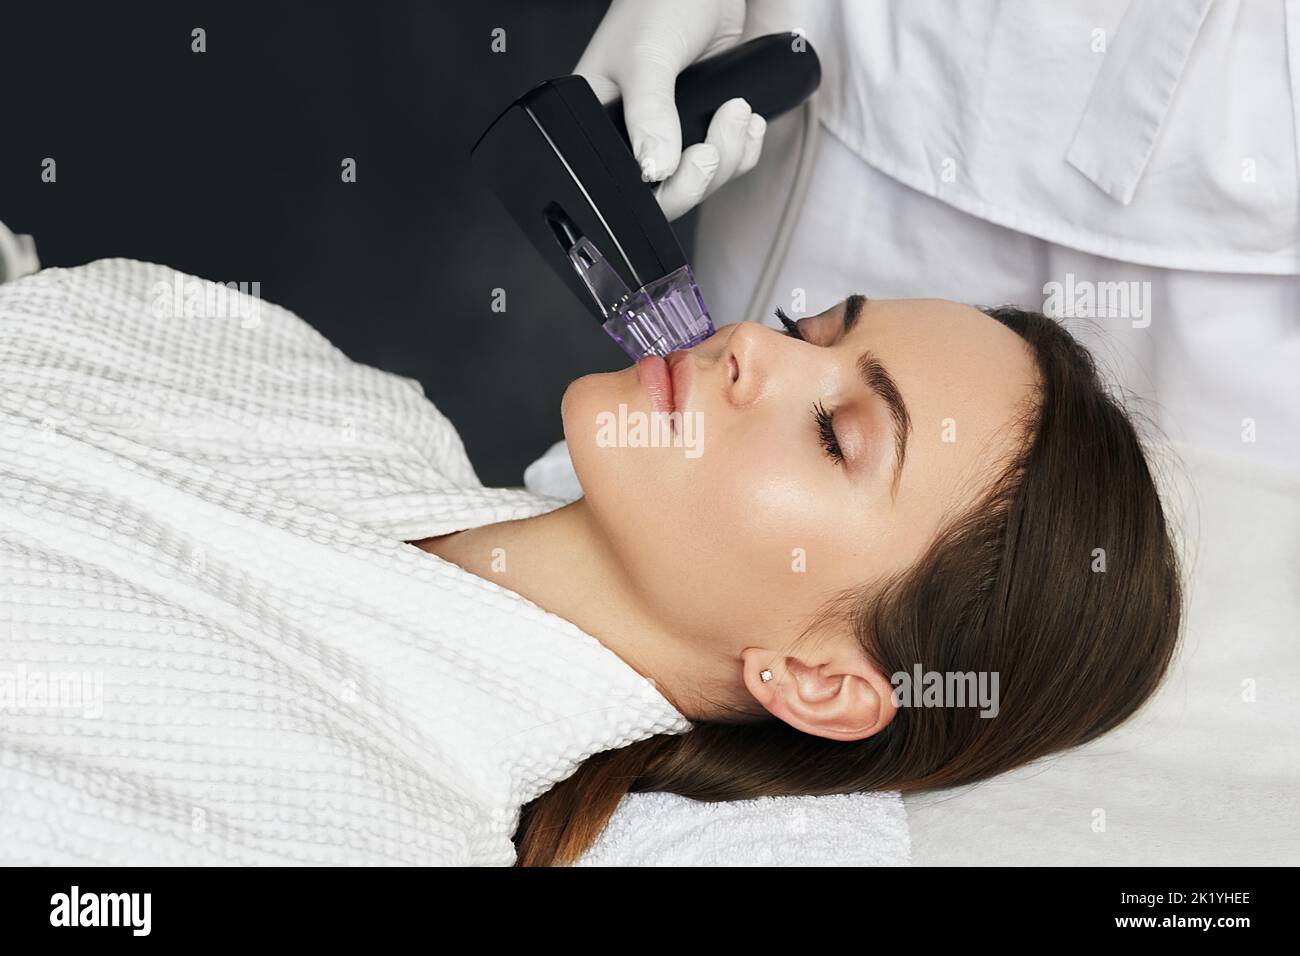 Donna brunetta che riceve la procedura di sollevamento a radiofrequenza per la pelle del viso ringiovanimento presso la clinica cosmetologica estetica Foto Stock